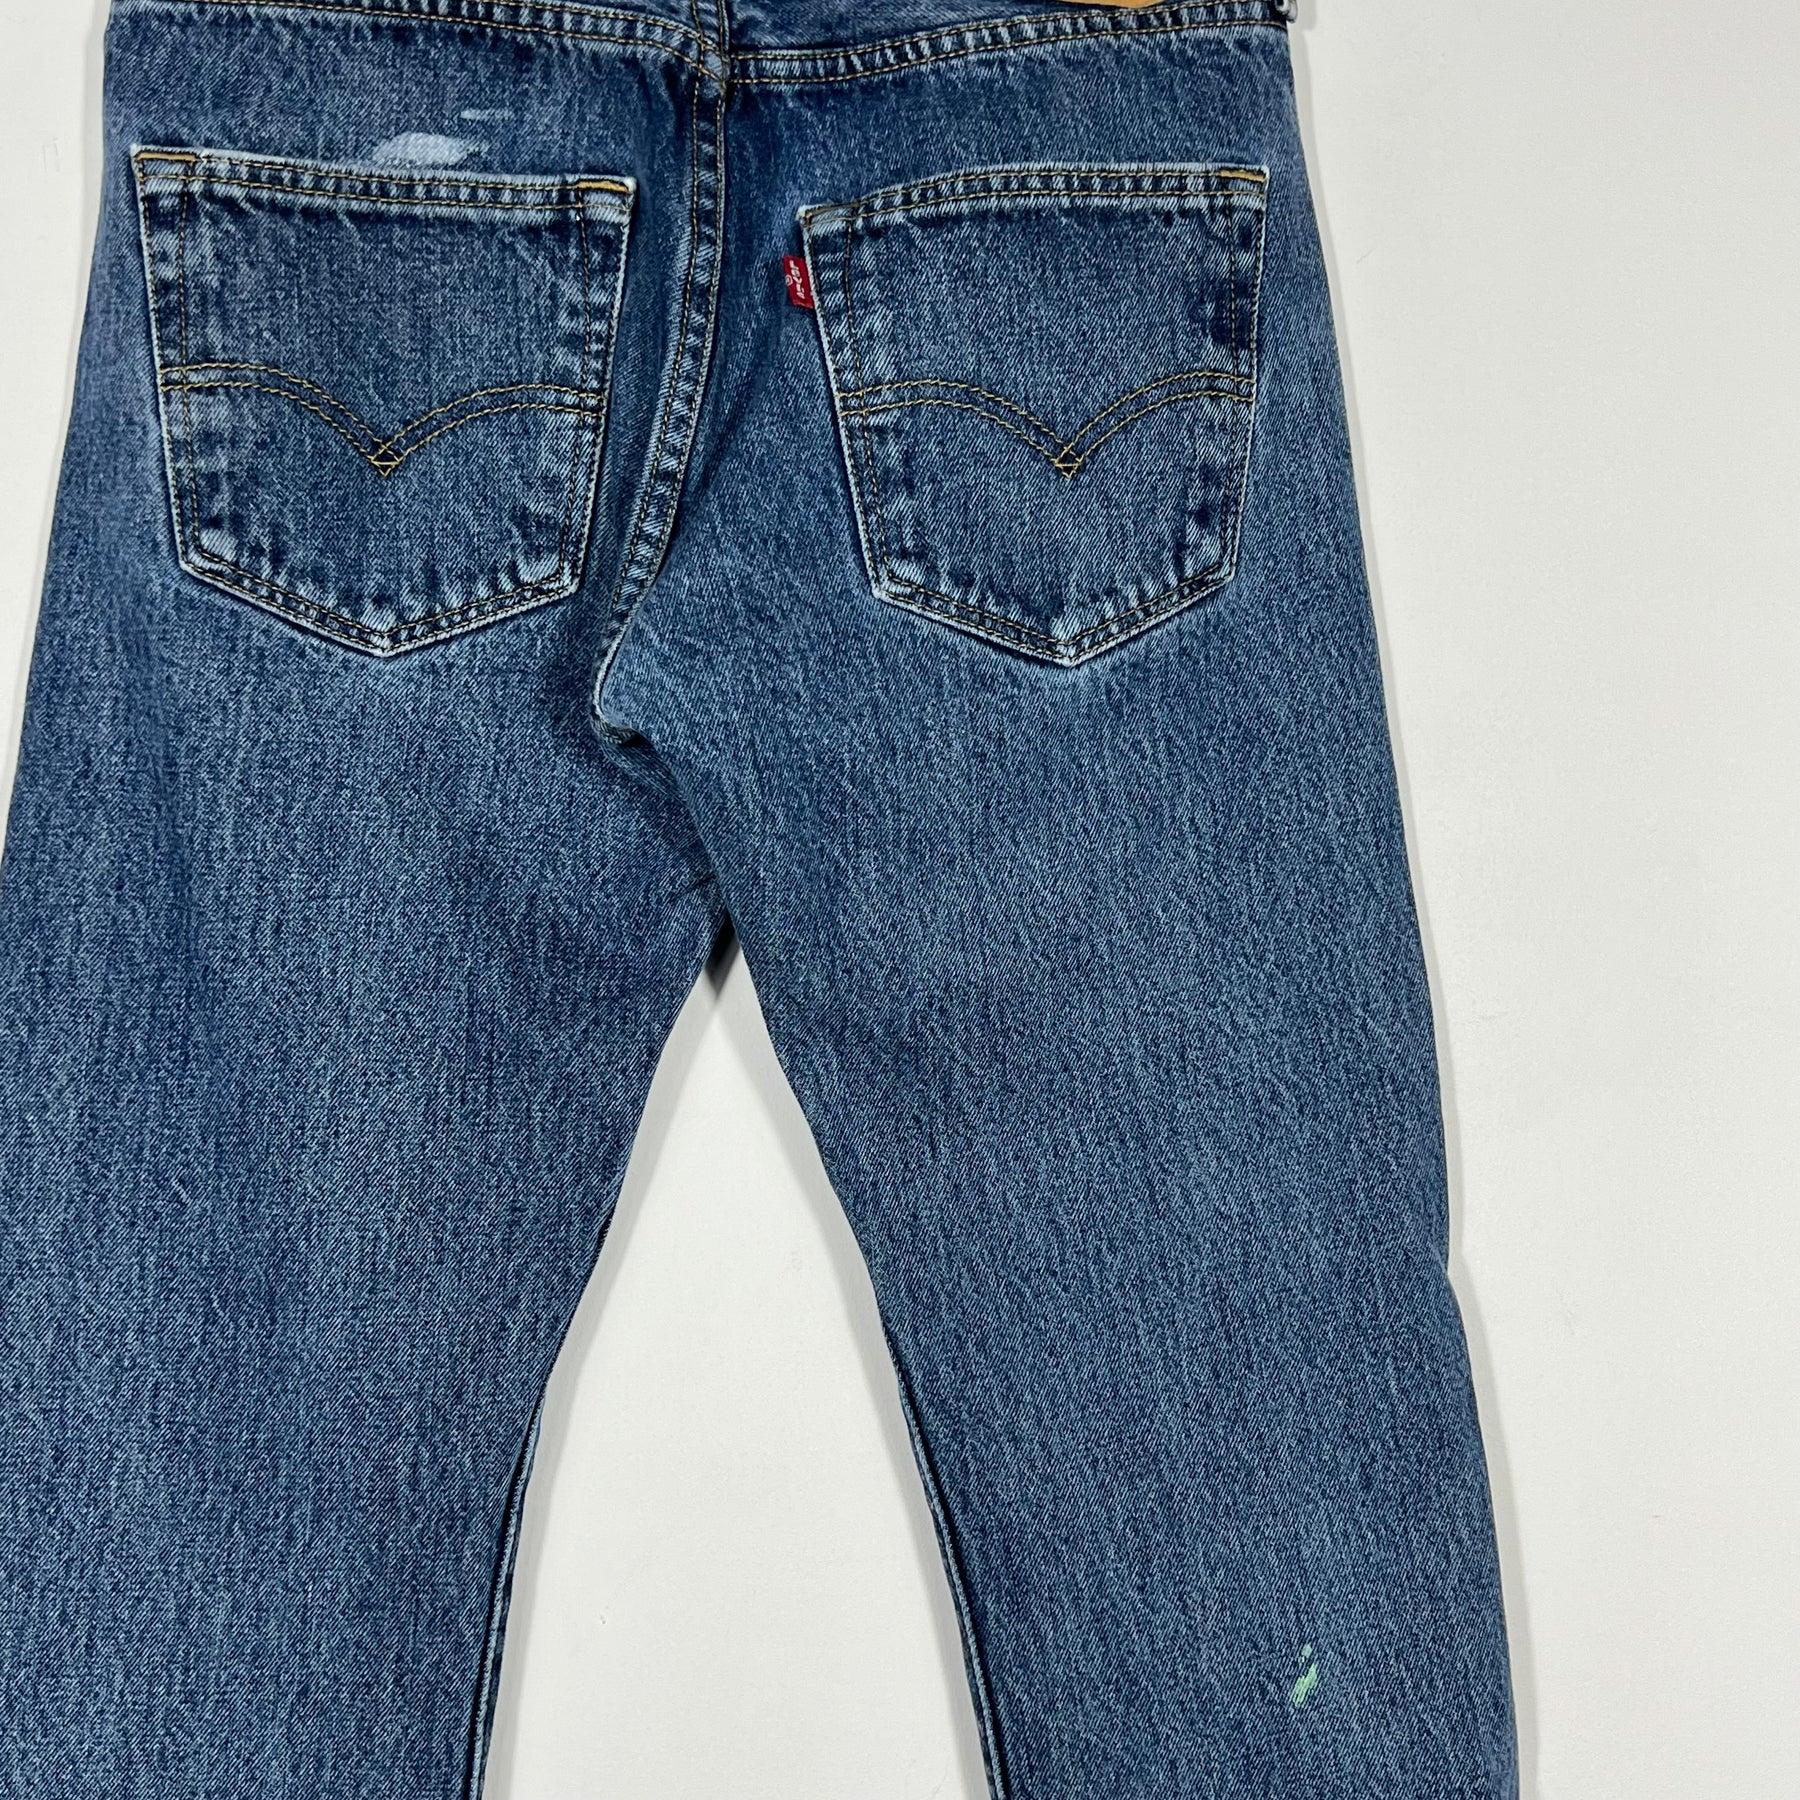 Vintage Levis 501 Jeans - Women's 28/30